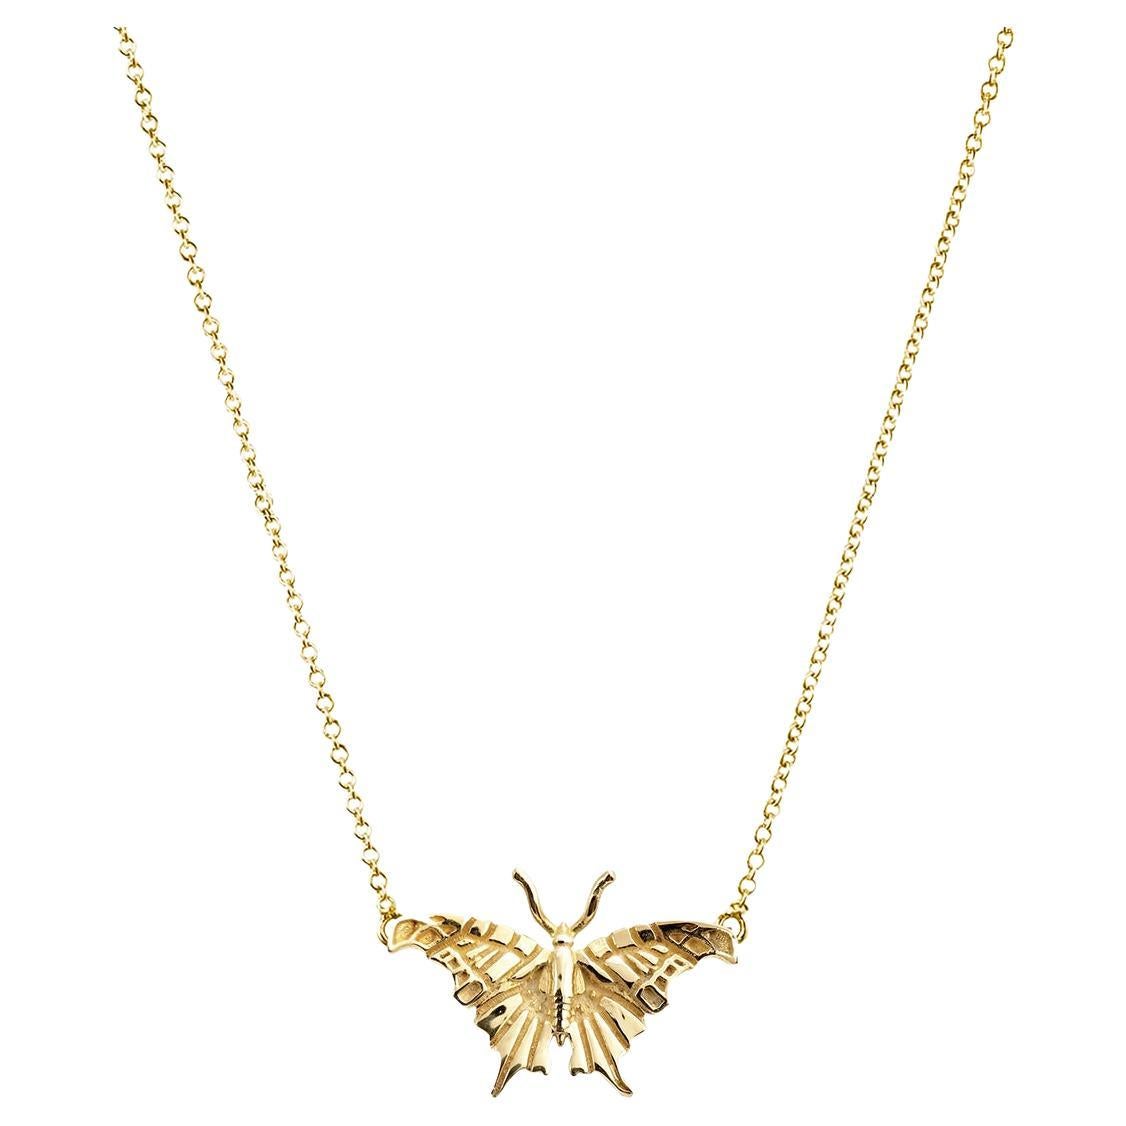 Fangen Sie die Essenz von Eleganz und Anmut mit unserer vergoldeten Small Butterfly Halskette ein. Der schimmernde Schmetterlingsanhänger mit einer Höhe von 9 mm und einer Breite von 13 mm tanzt zart auf Ihrem Dekolleté und bildet einen